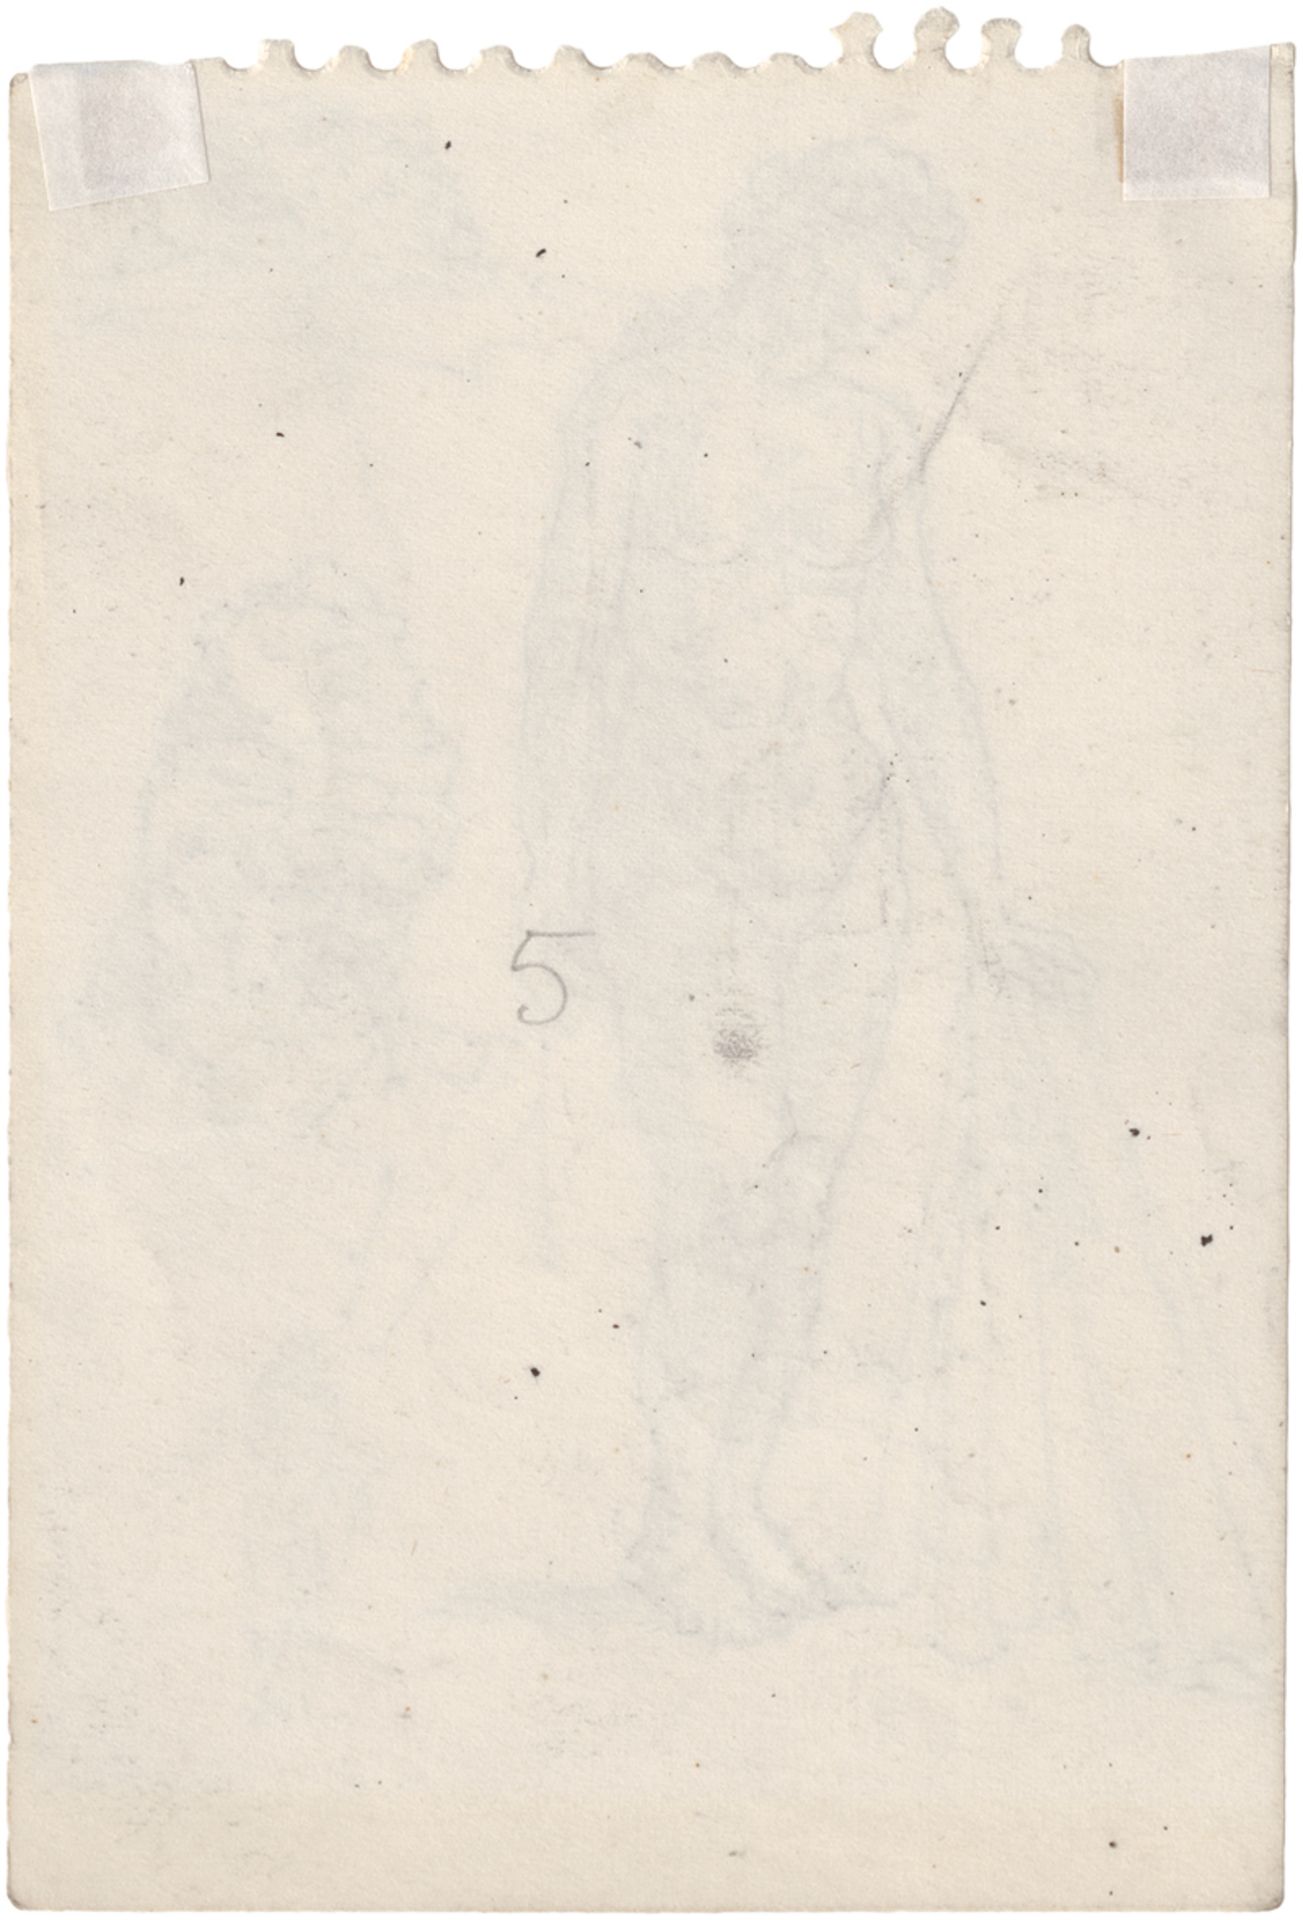 Chirico, Giorgio de: Weiblicher Akt, zwei Kopfstudien und eine Figurstudie - Image 2 of 2